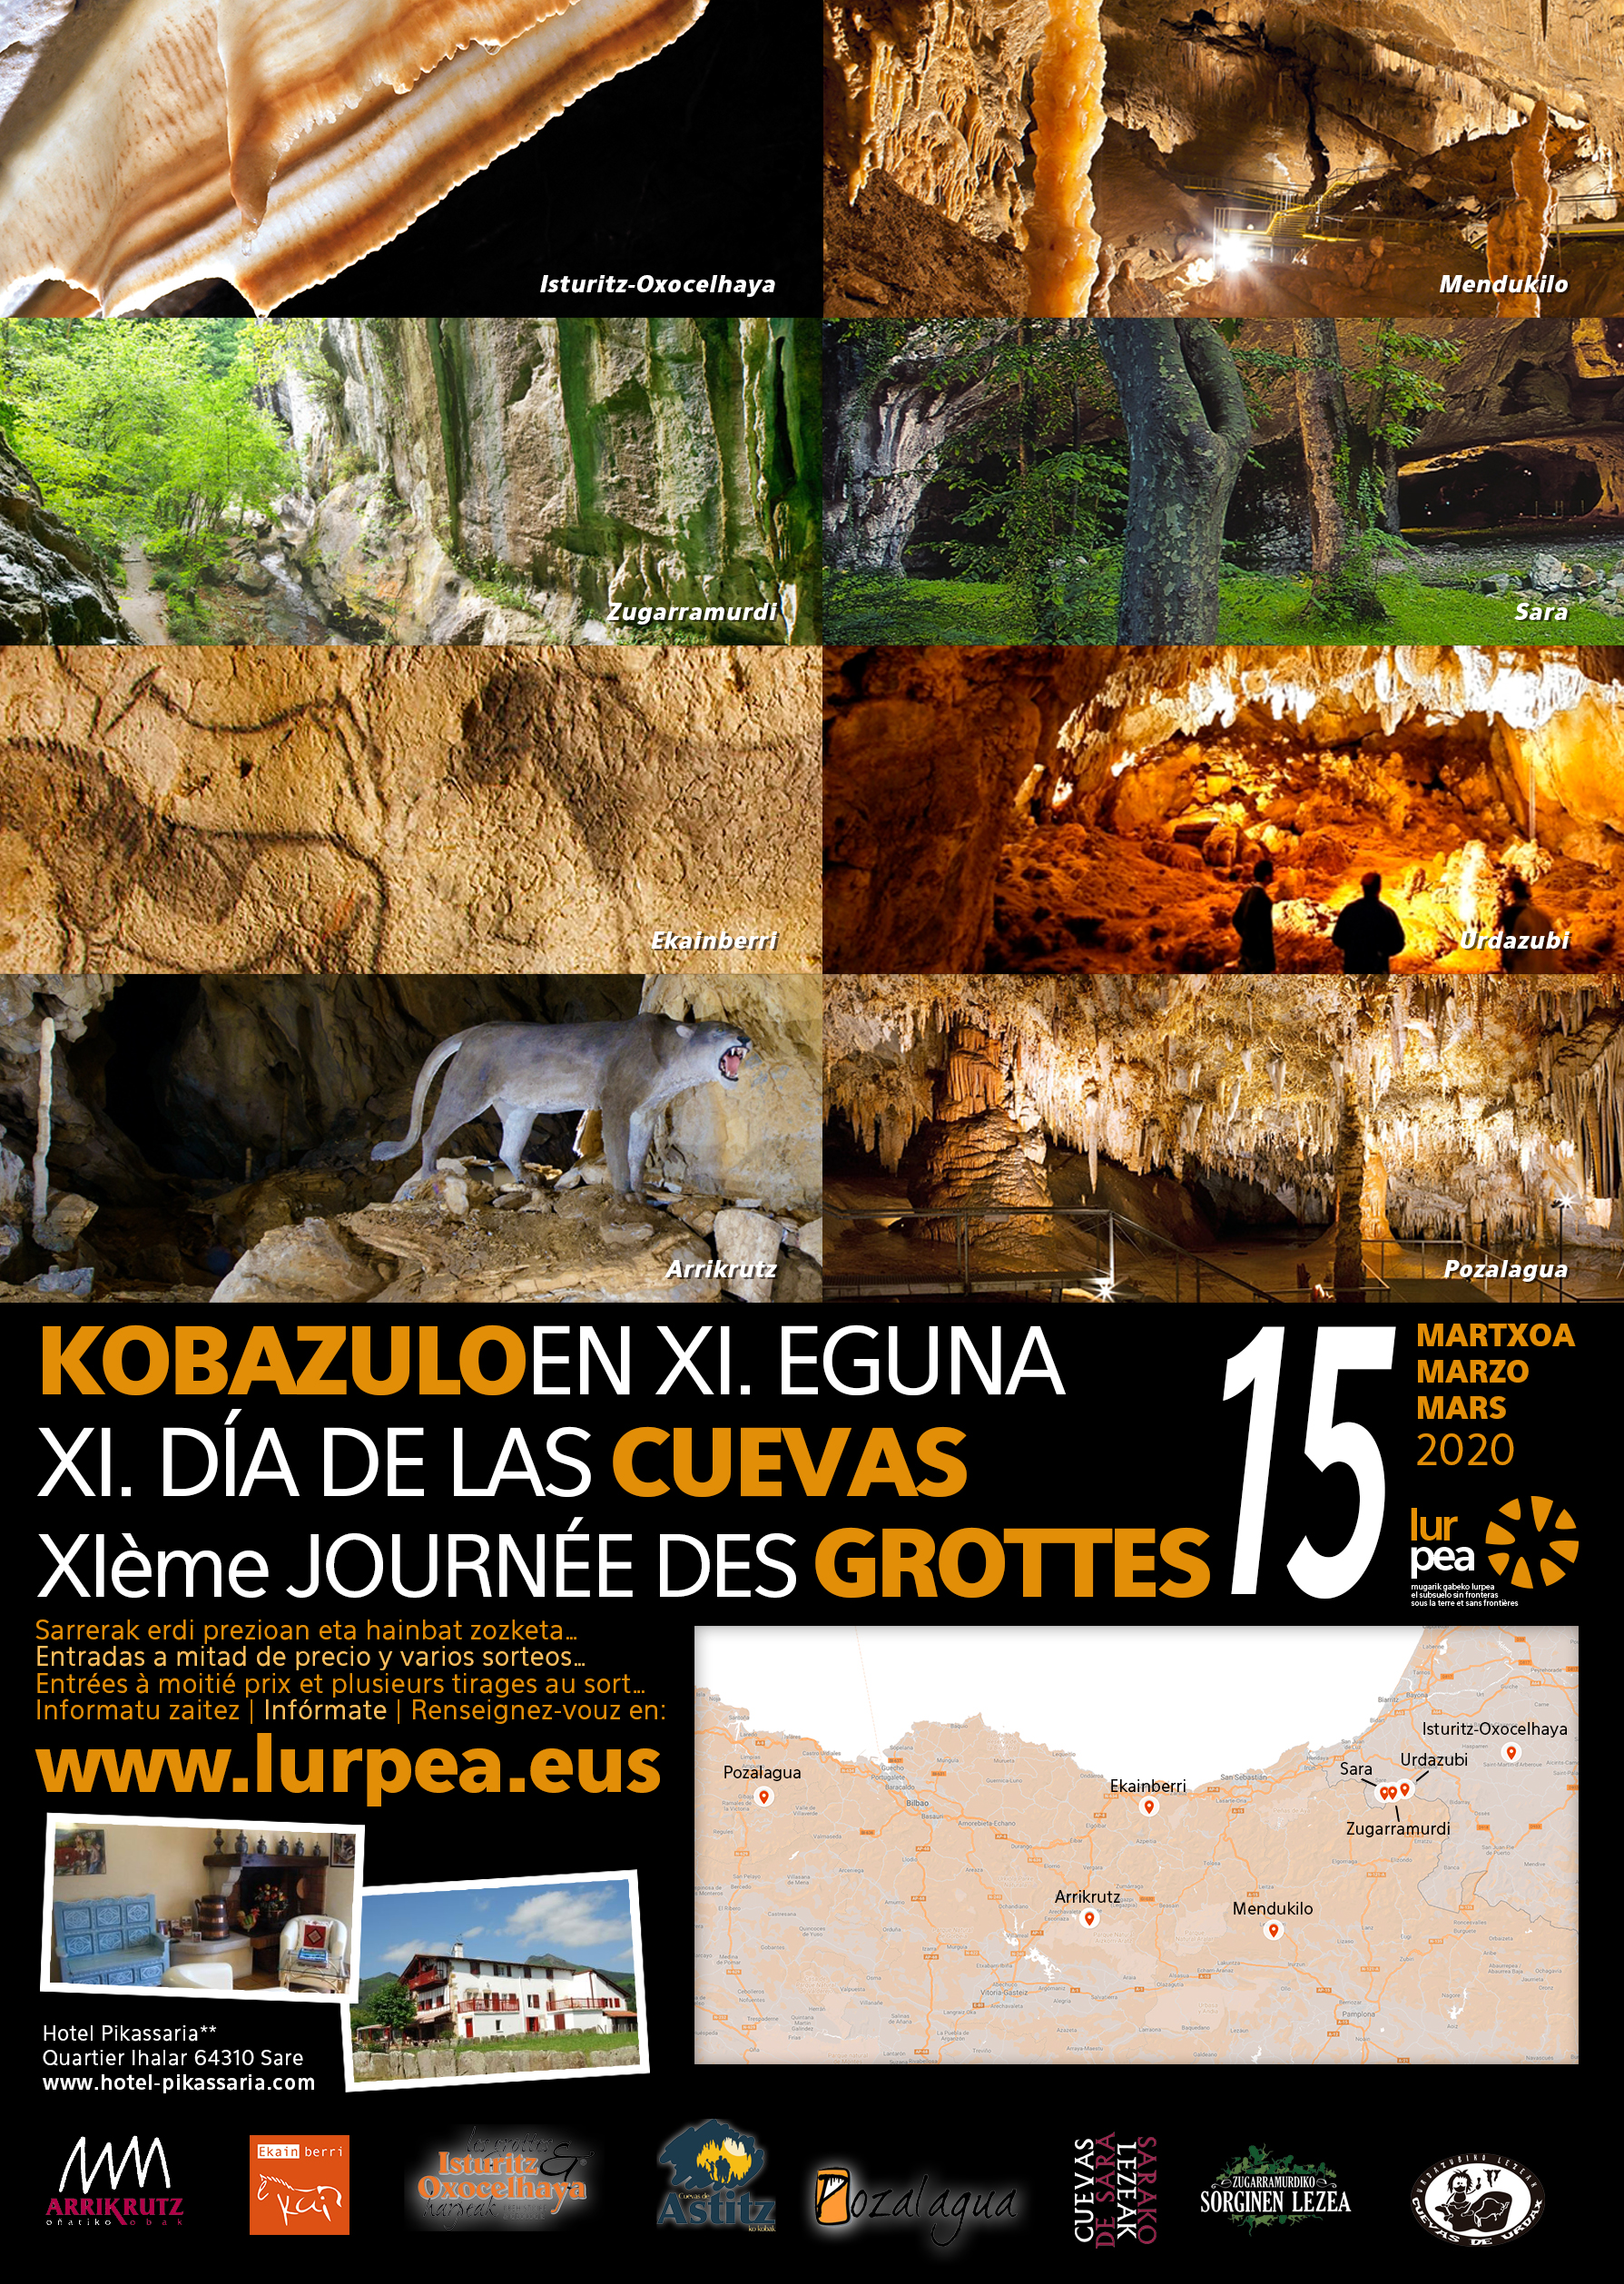 El grupo Lurpea celebrará el XI Día de las Cuevas